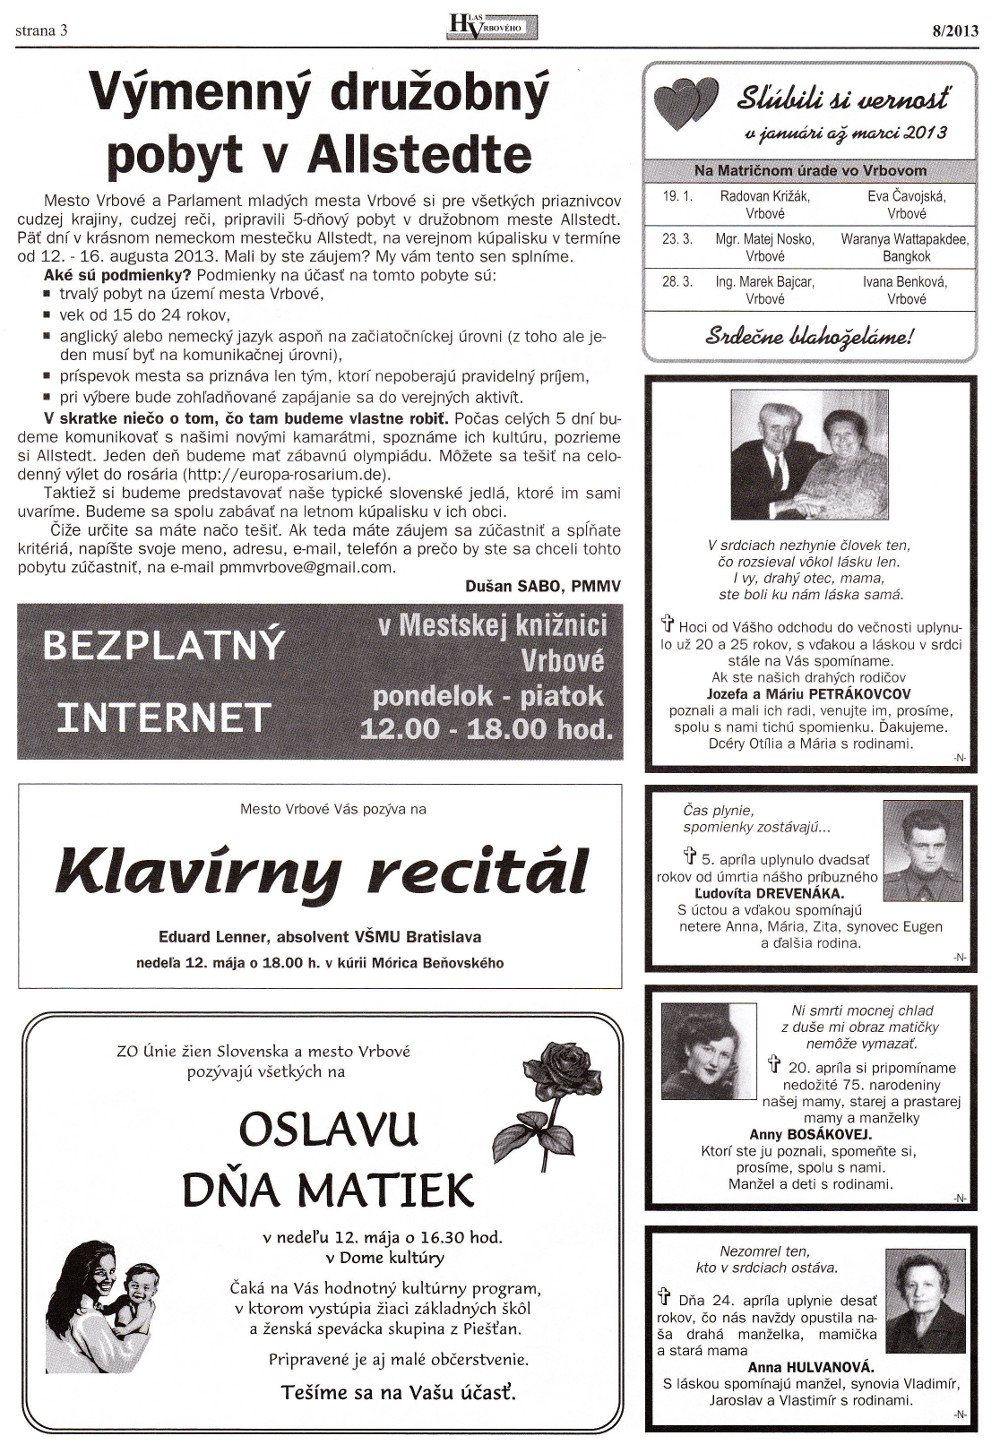 Hlas Vrbového 08/2013, strana 3